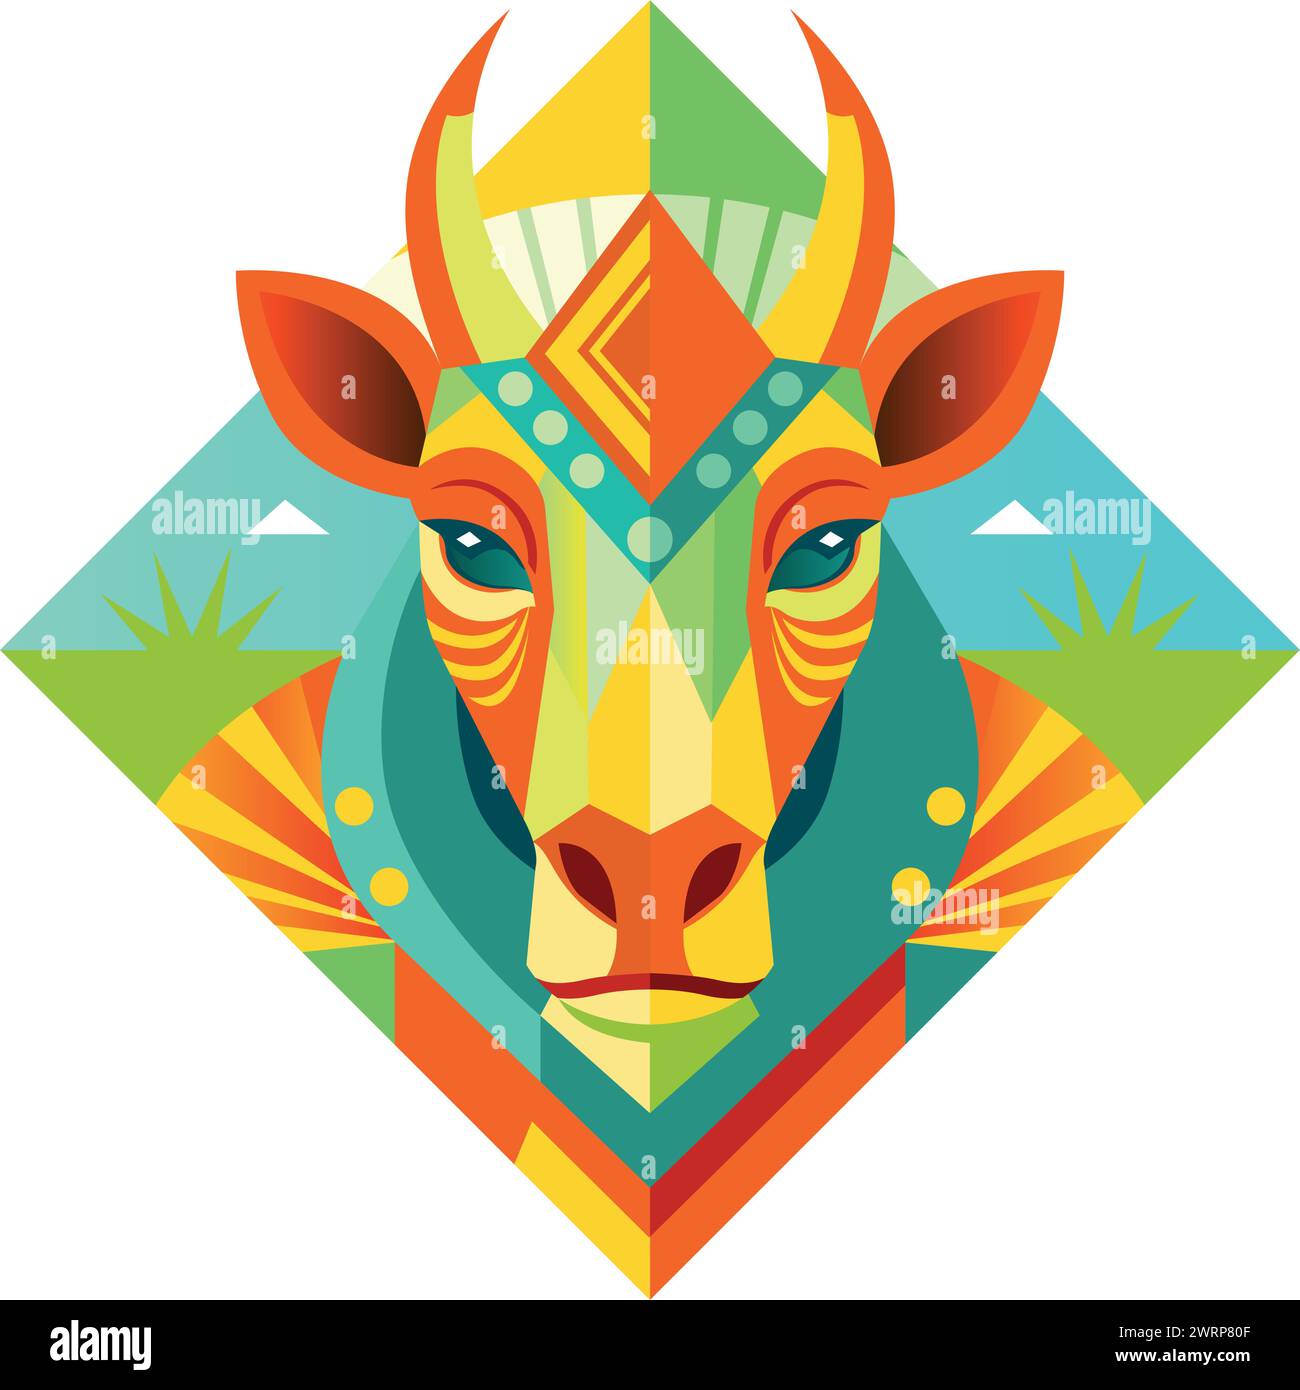 Vue de face du masque africain en forme de tête de zèbre dans un style géométrique avec des couleurs chaudes. Image vectorielle Illustration de Vecteur